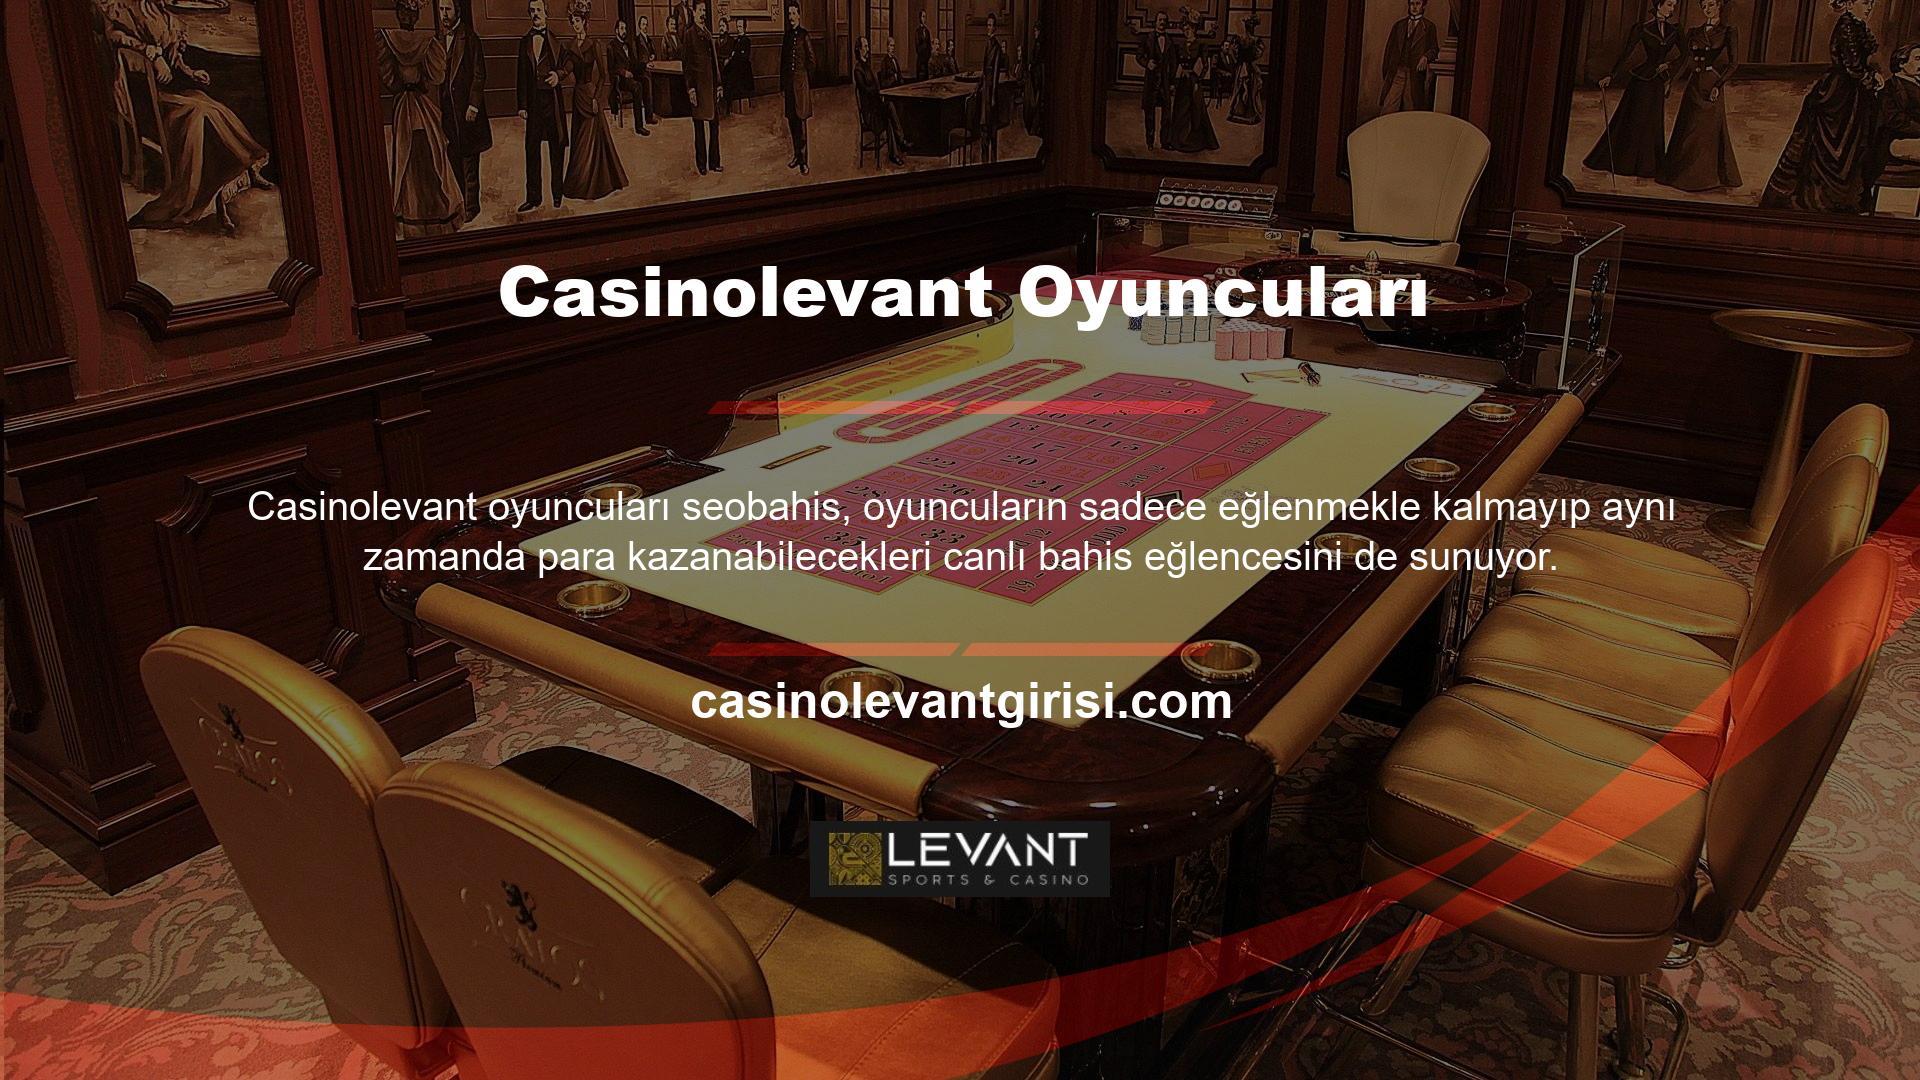 Ülkemizin en iyi yasadışı casino sitesi olan ülkemizde casino hizmeti veren Casinolevant üyelerinin sayısı her geçen gün artmaktadır